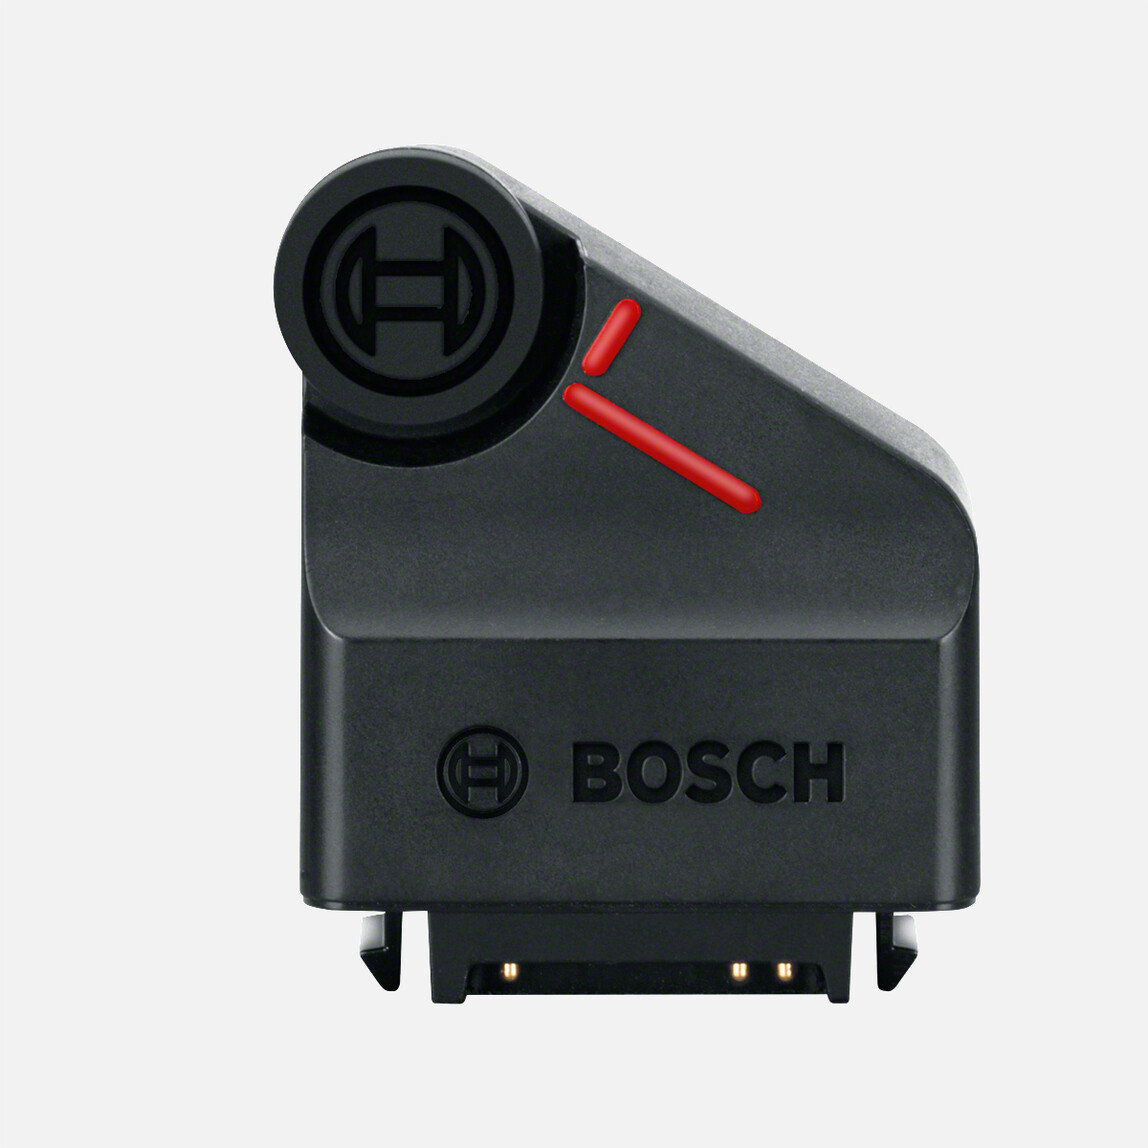    Bosch Zamo Iıı 20 m Teker Adaptörü  